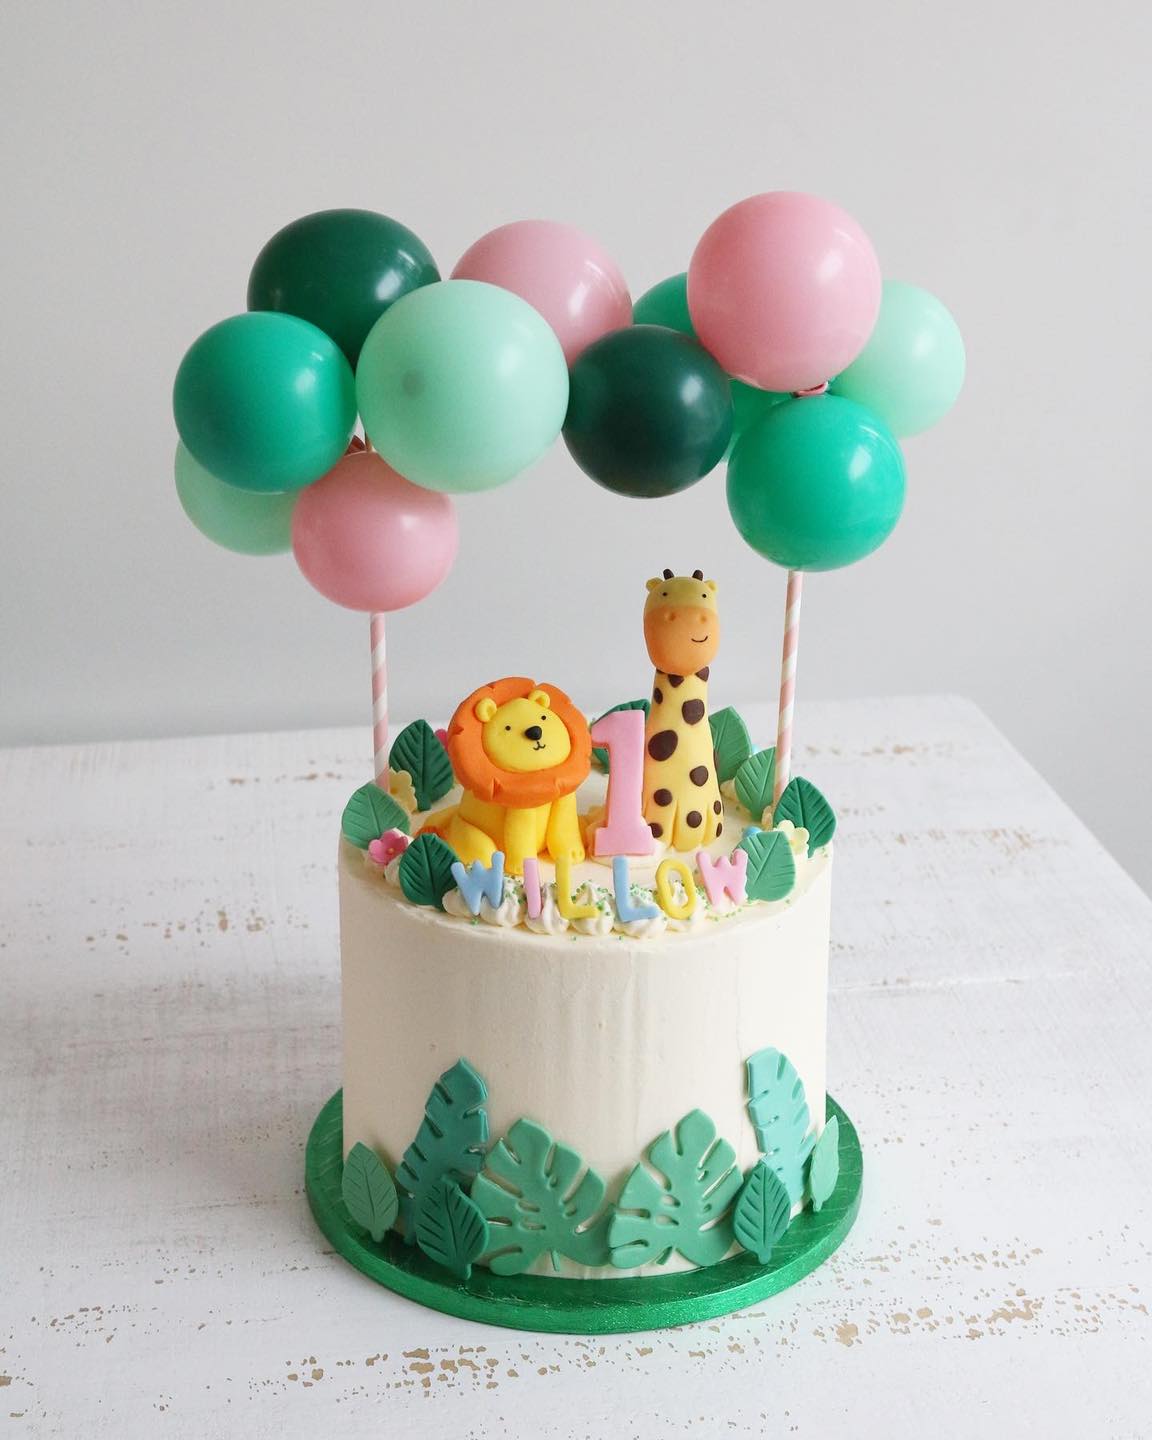 Jungle cake | Zoo cake, Animal birthday cakes, Safari cakes